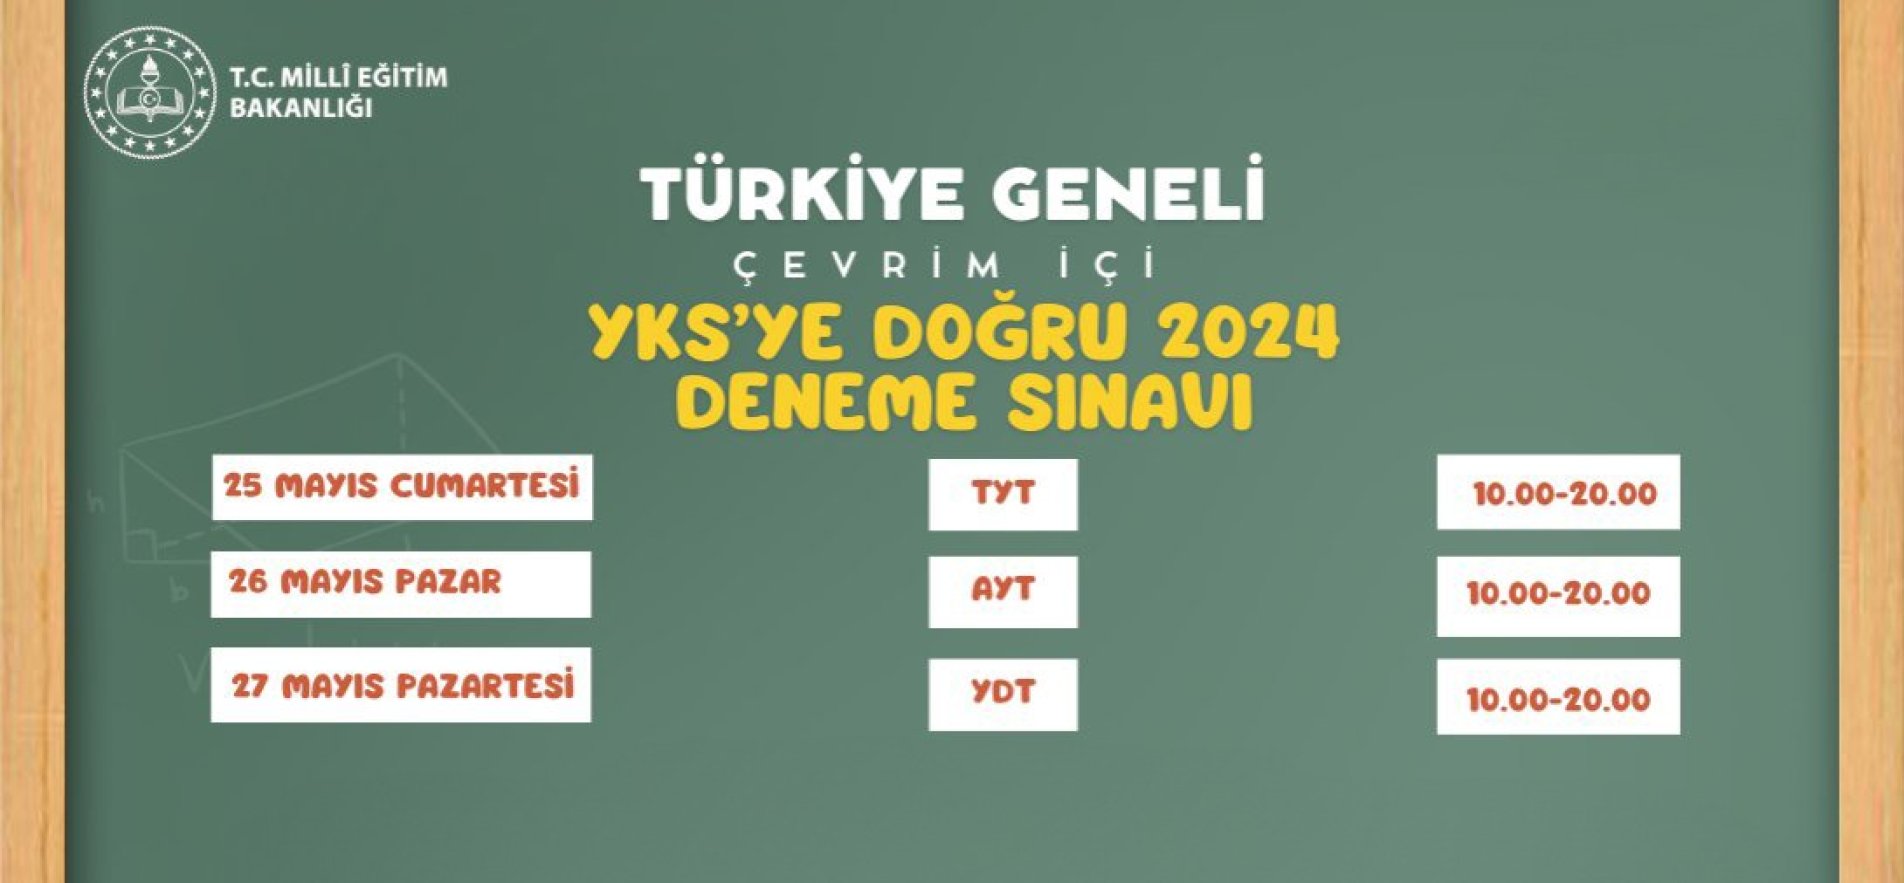 MEB’den, ‘YKS’ye Doğru 2024’ Türkiye geneli çevrimiçi deneme sınavı